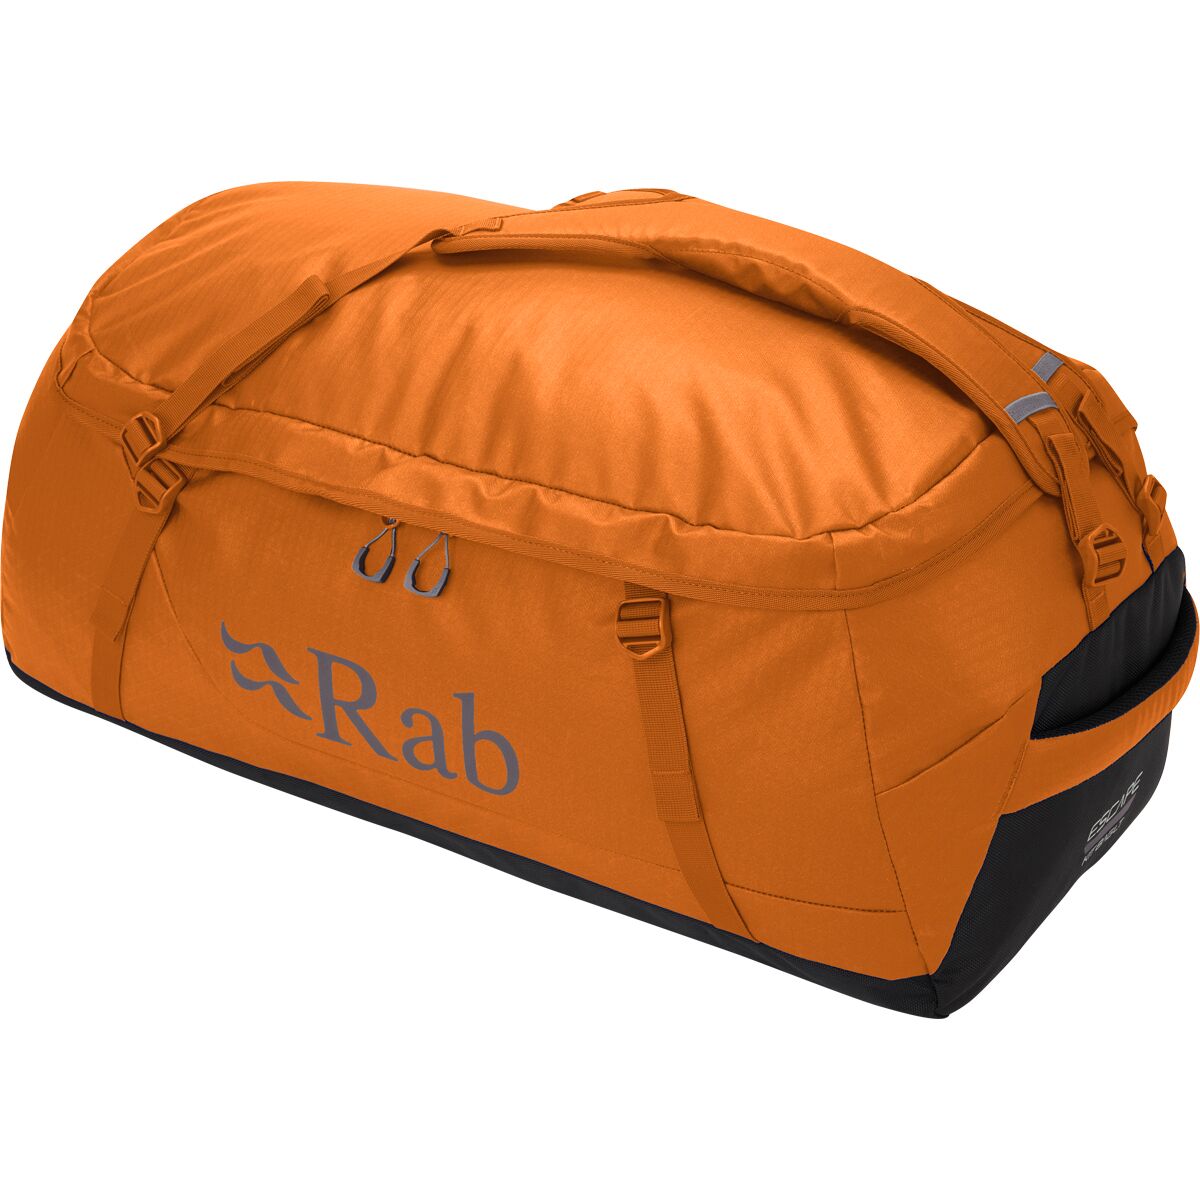 Escape Kit Bag LT 50L Duffle Bag